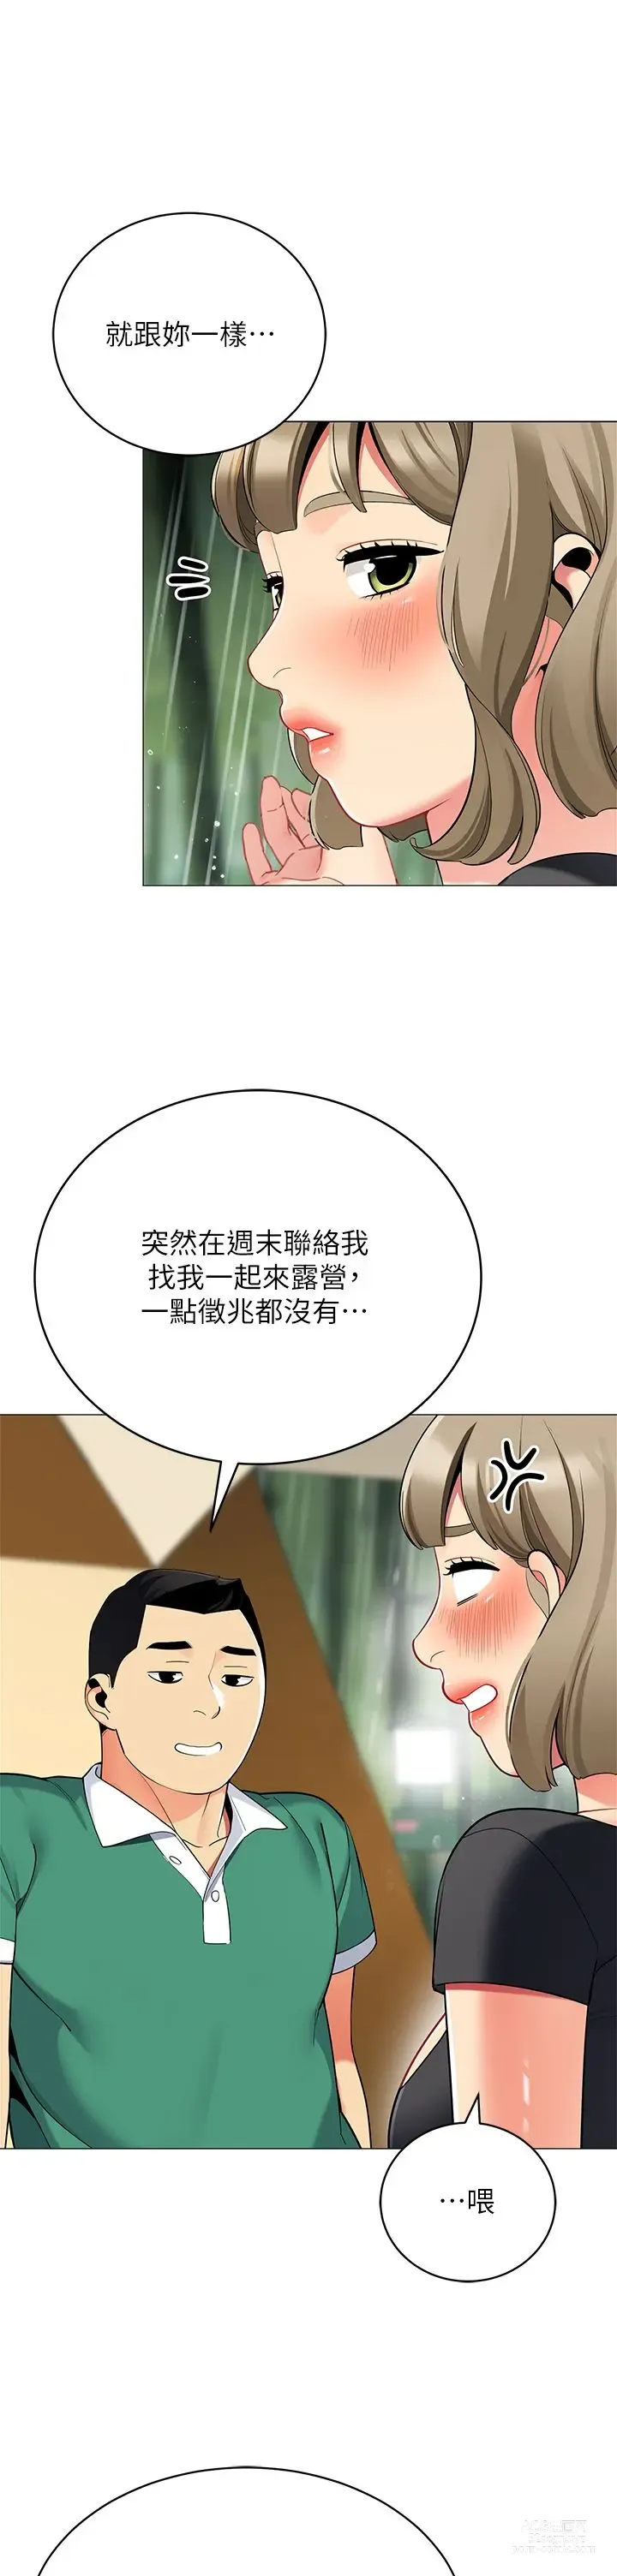 Page 8 of manga 帳篷裡的秘密 31-50 完结 中文无水印